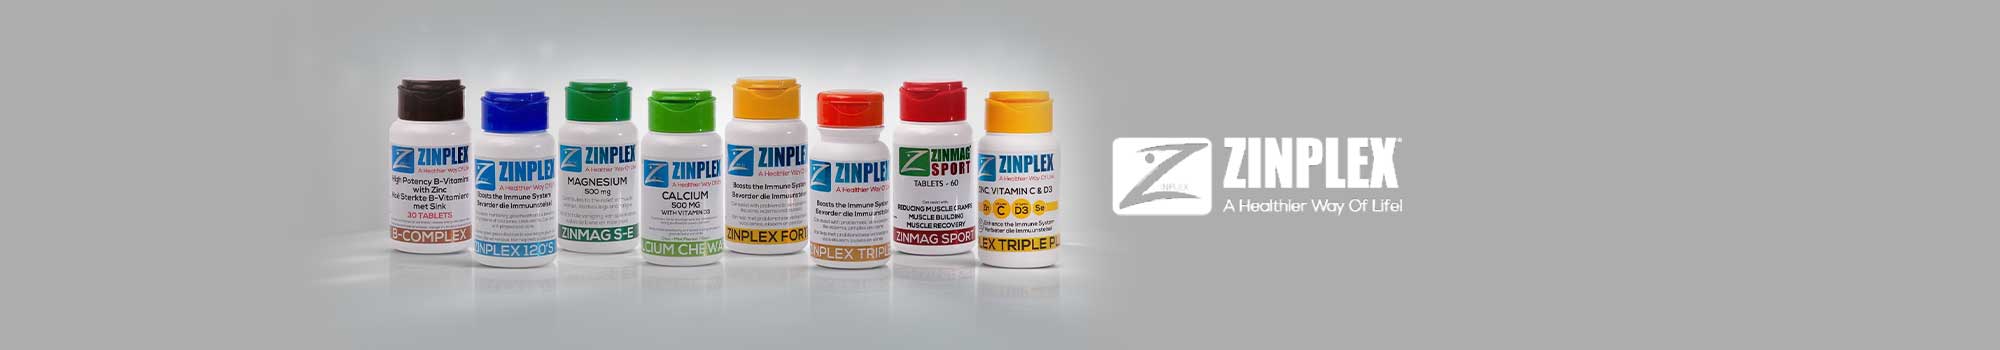 Zinplex Vitamins